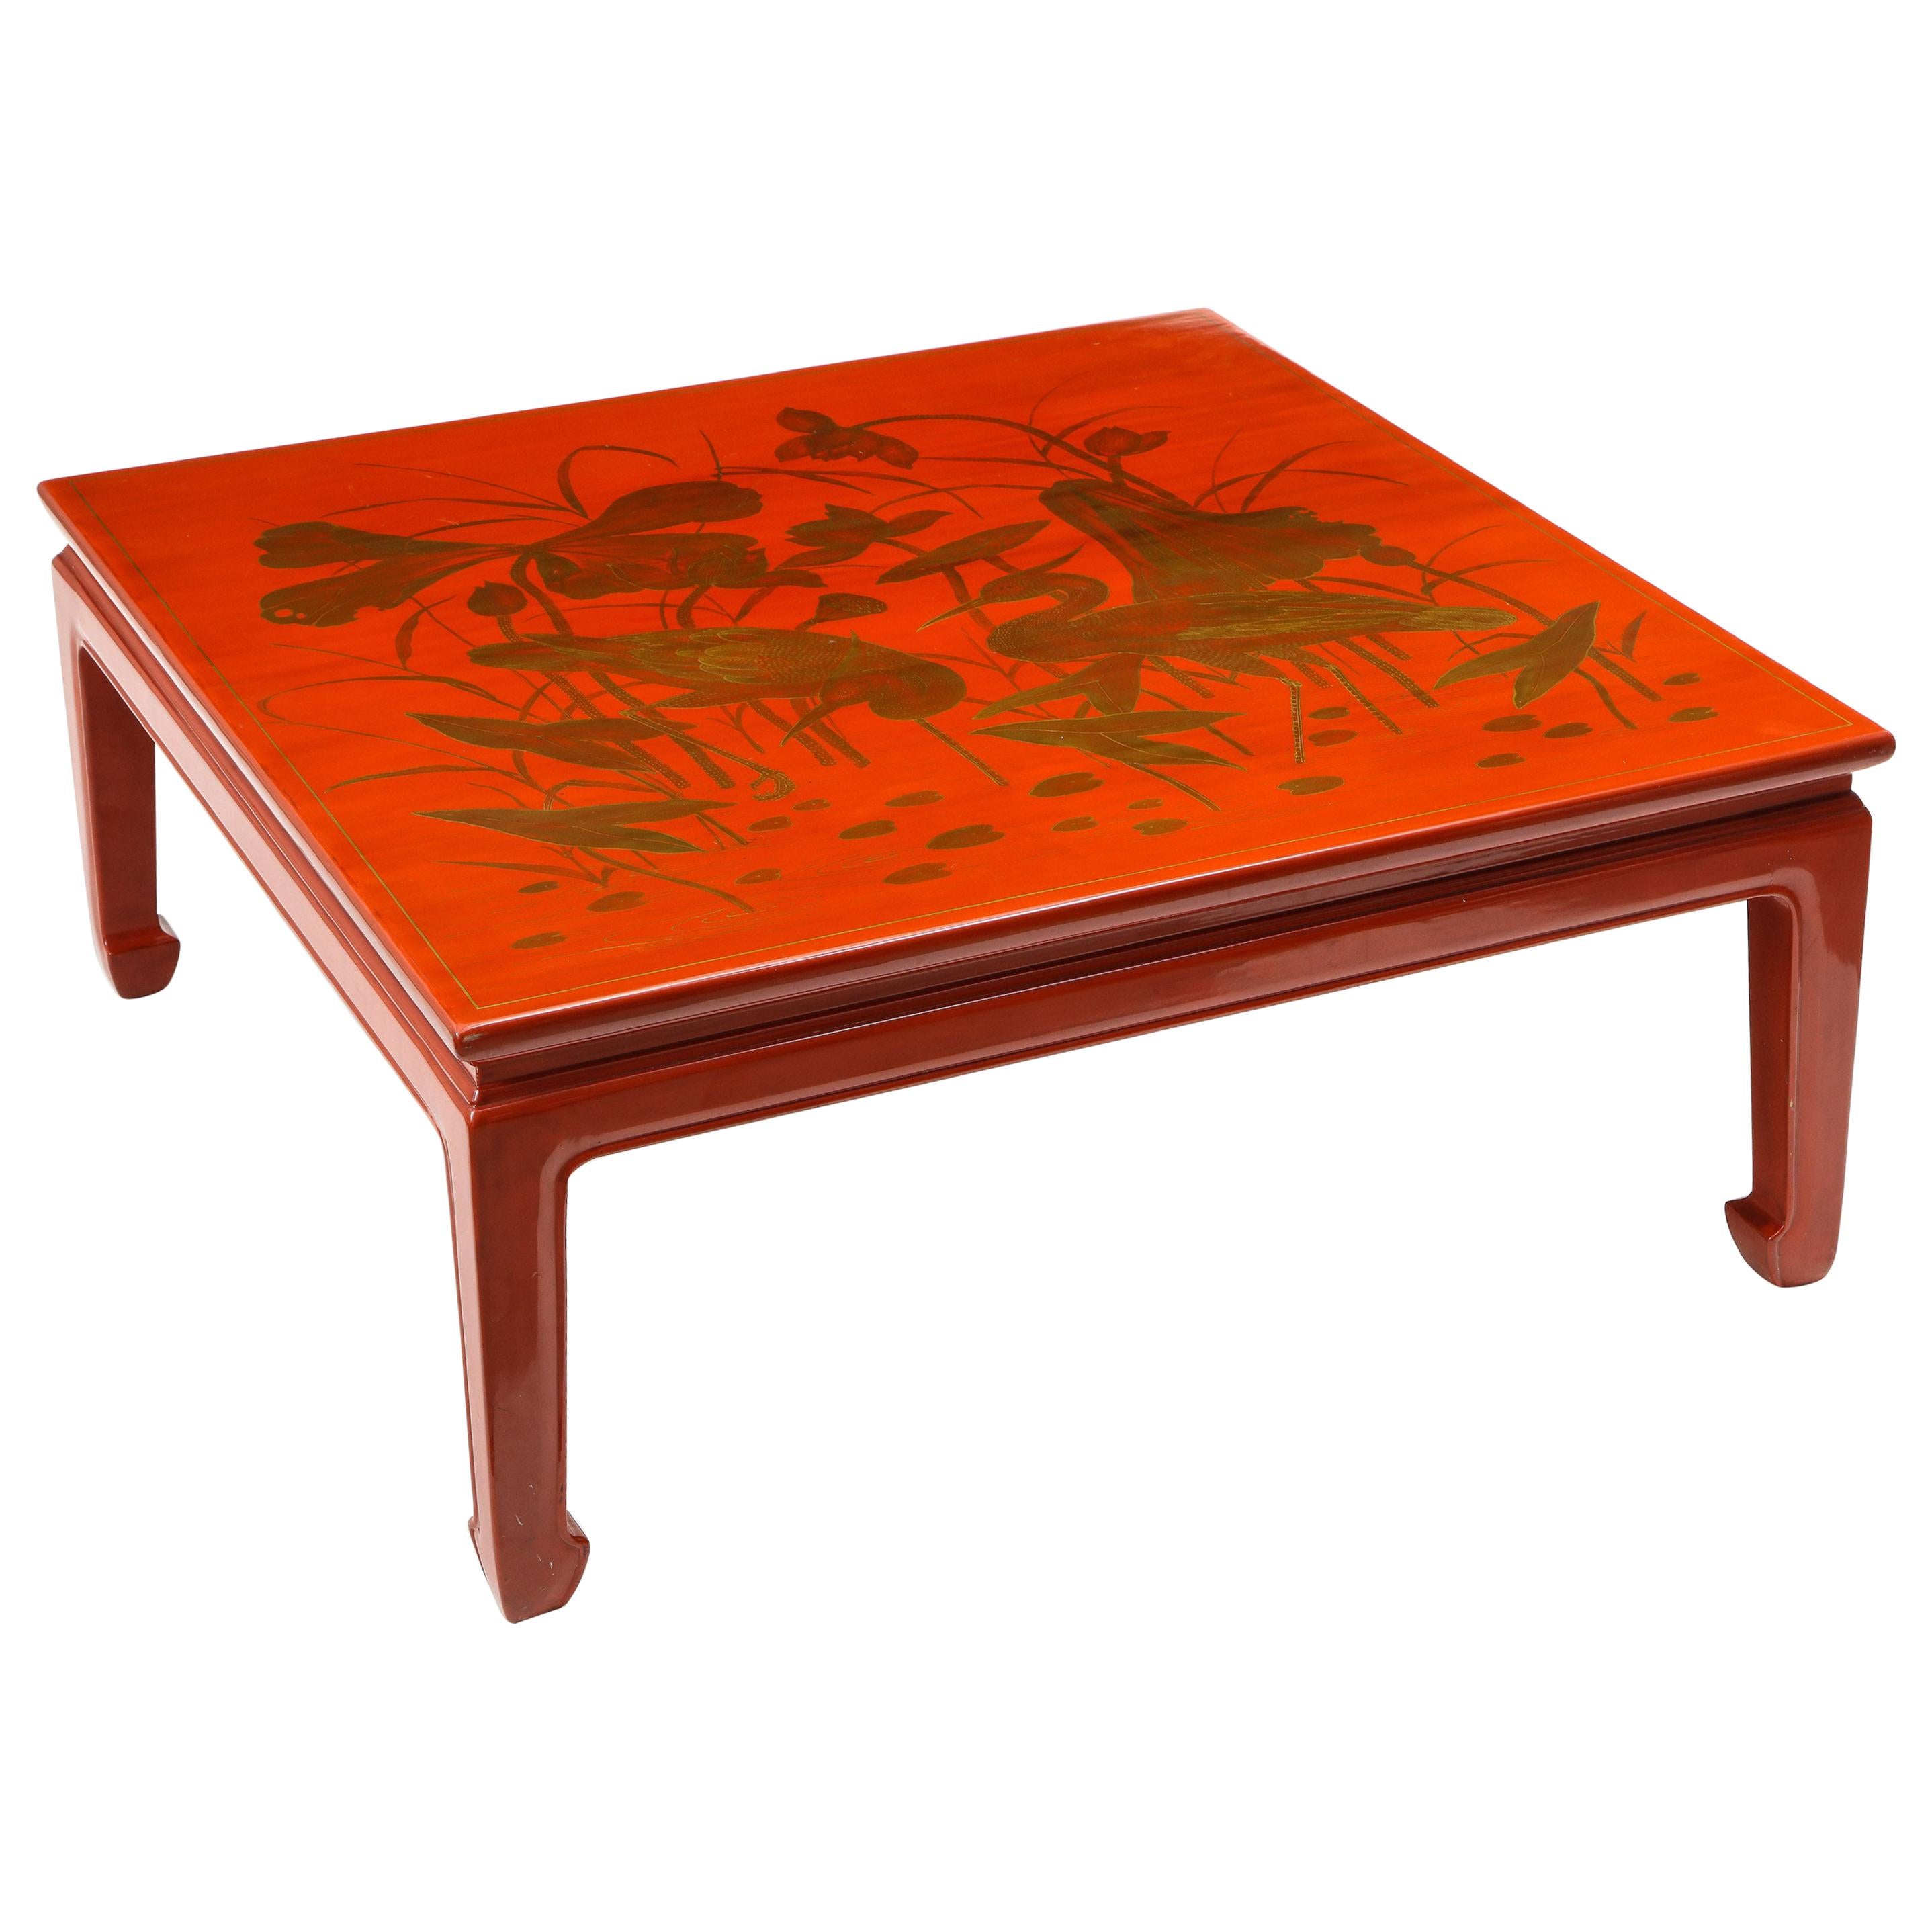 Table basse carrée de style chinoiserie en laque rouge et dorure